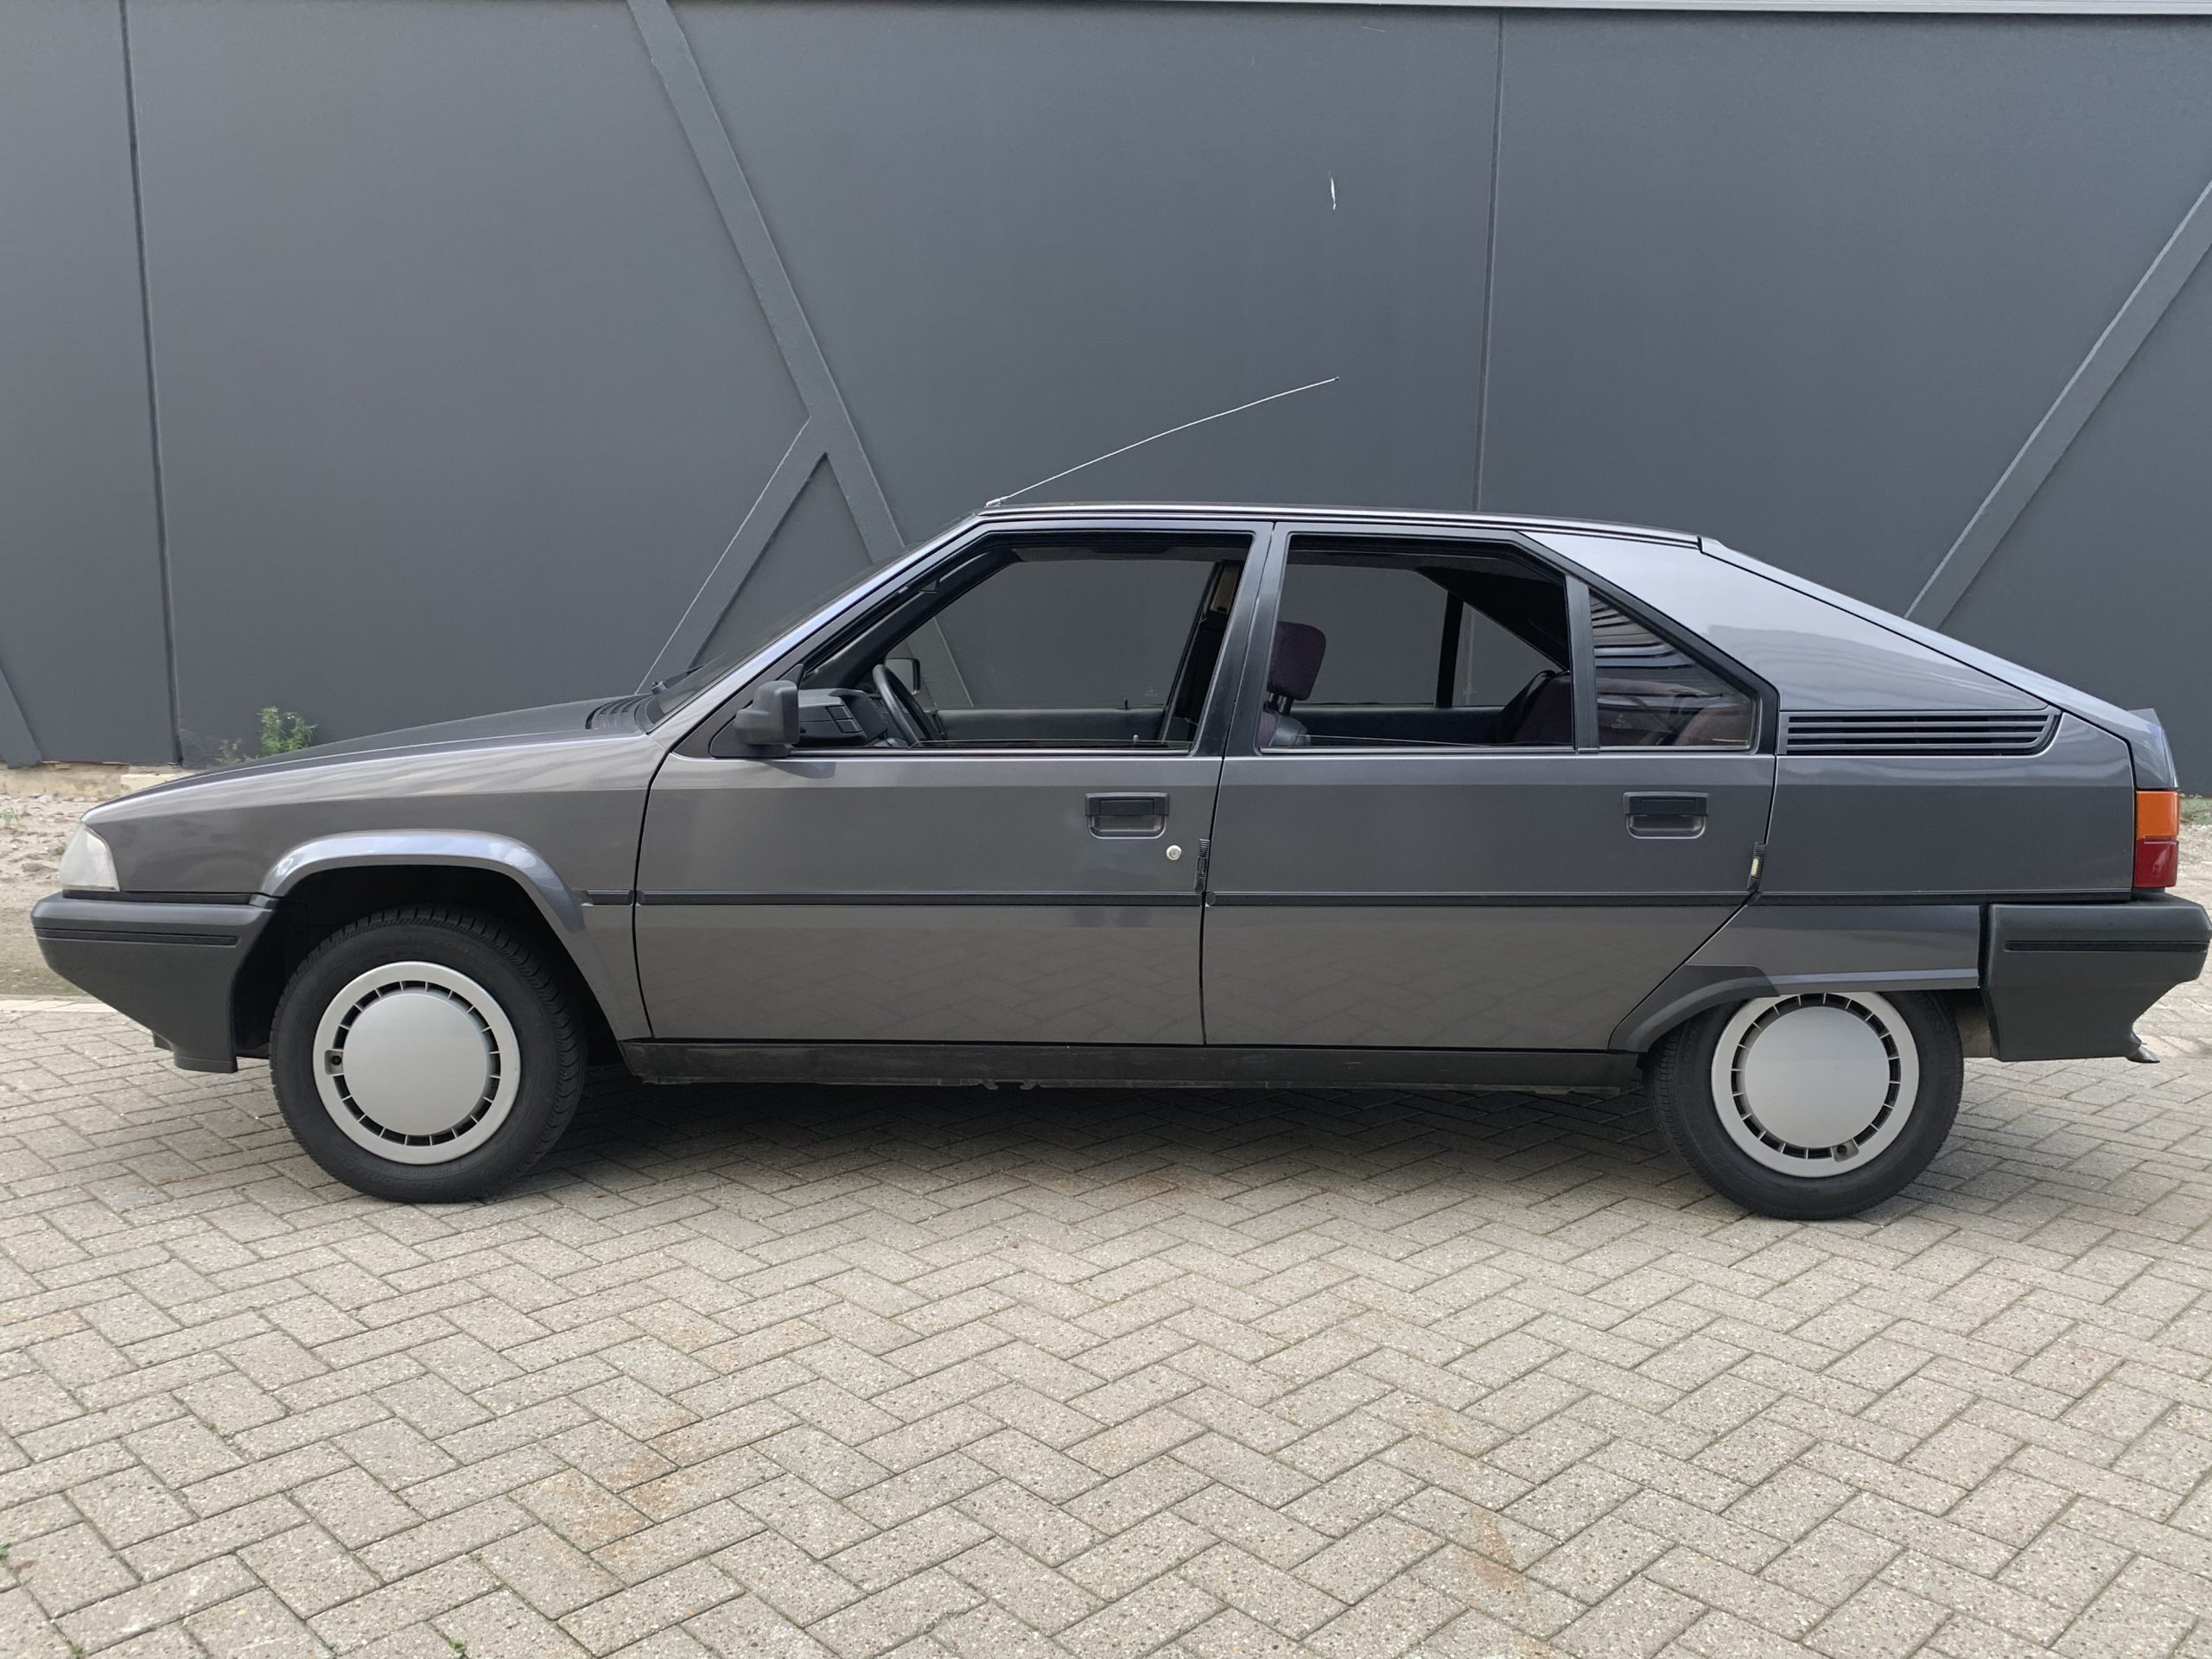 Citroën BX 1.6 TGS